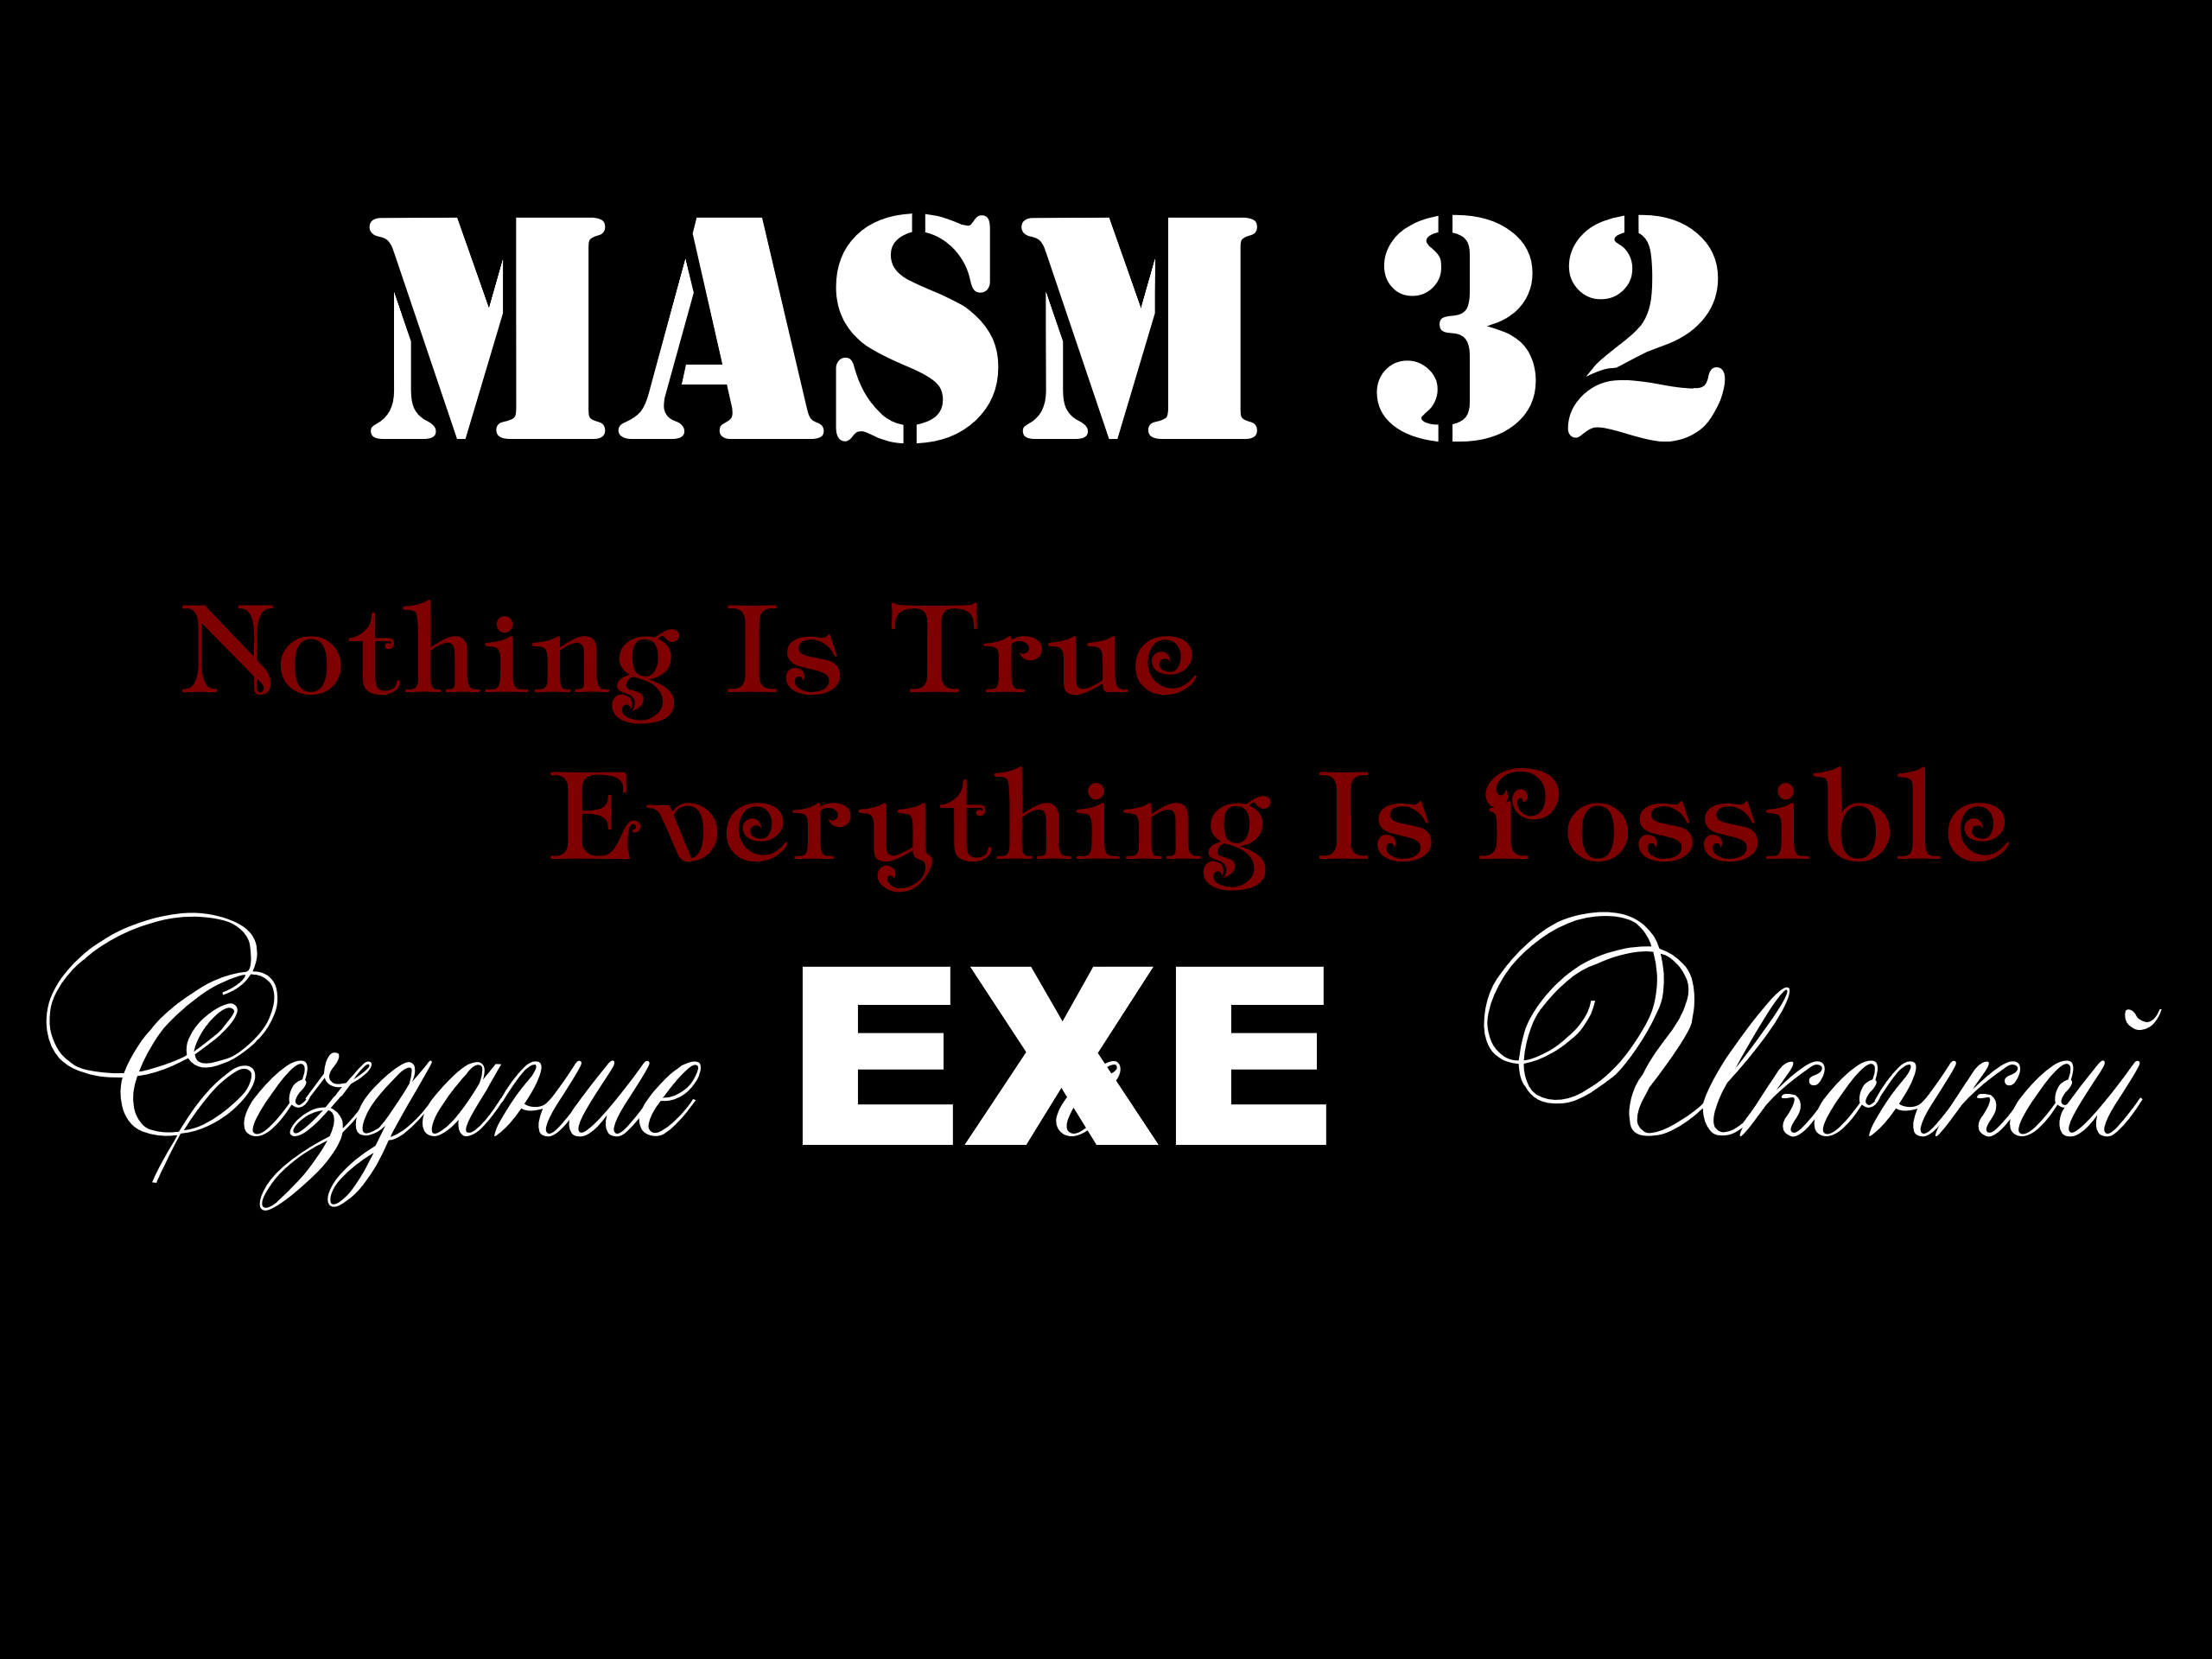 [MASM32]Создание файла EXE с Иконкой на MasM32 в студии WinAsm .[MASTERING OF CODING]